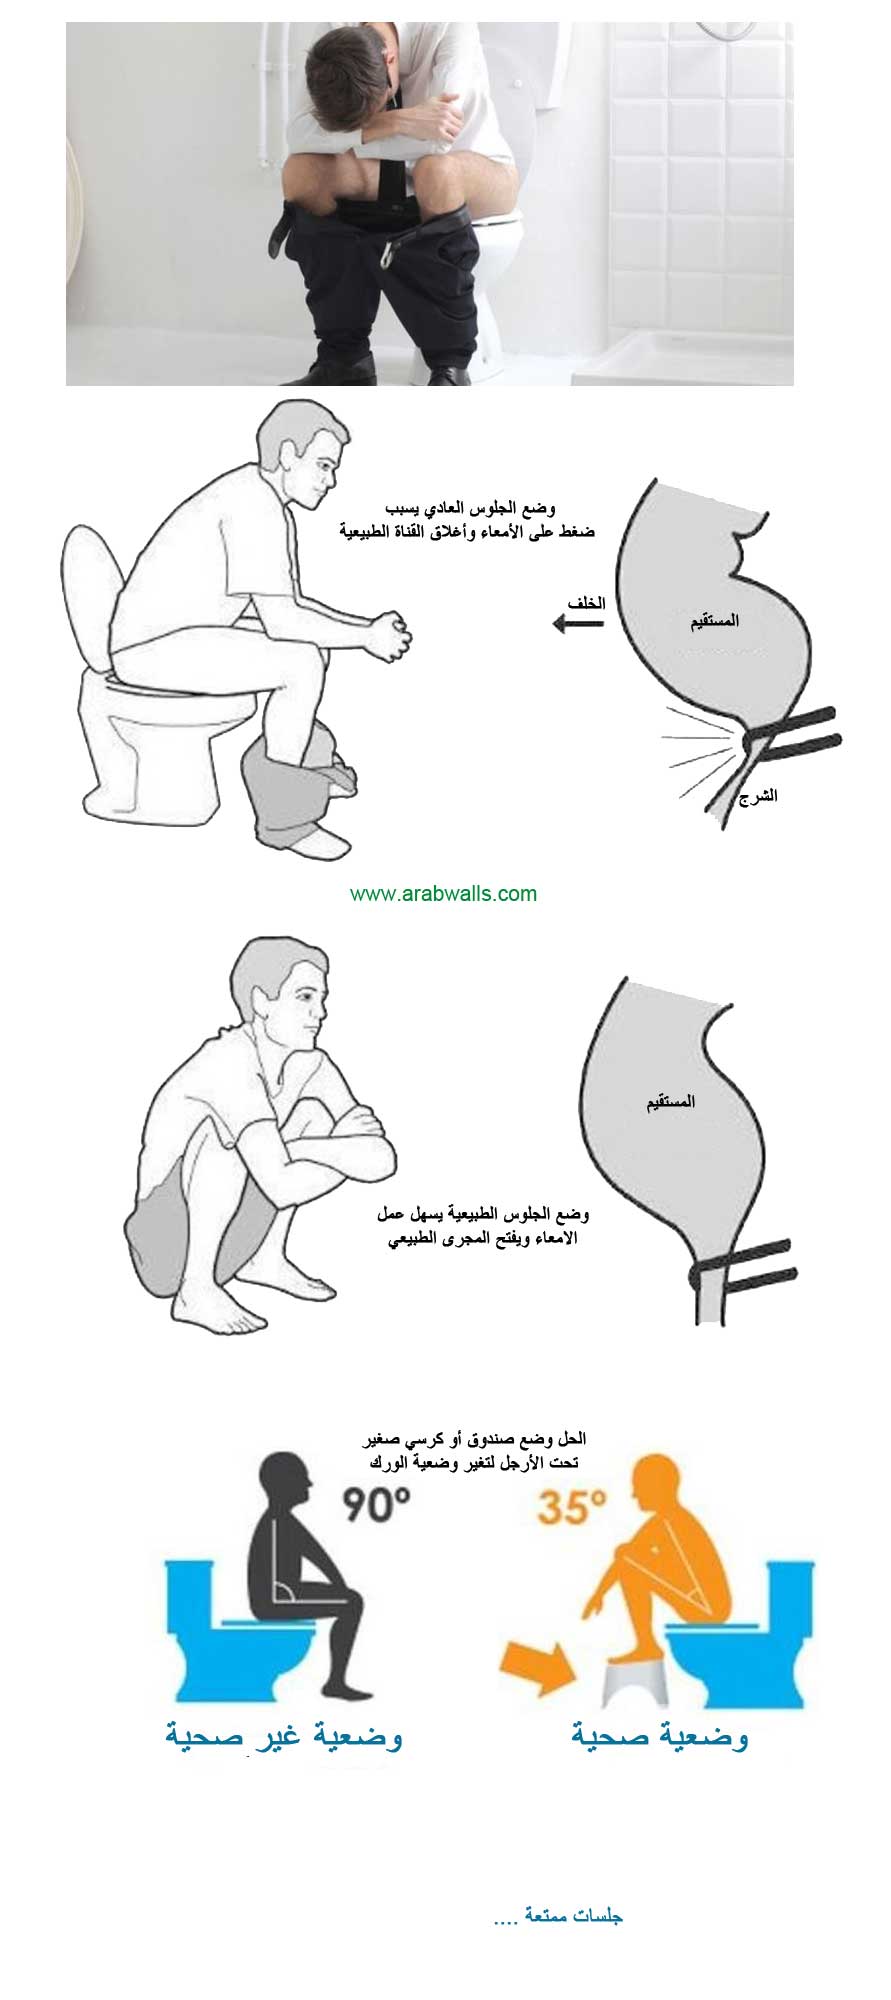 الوضعية السليمة للجلوس على المرحاض